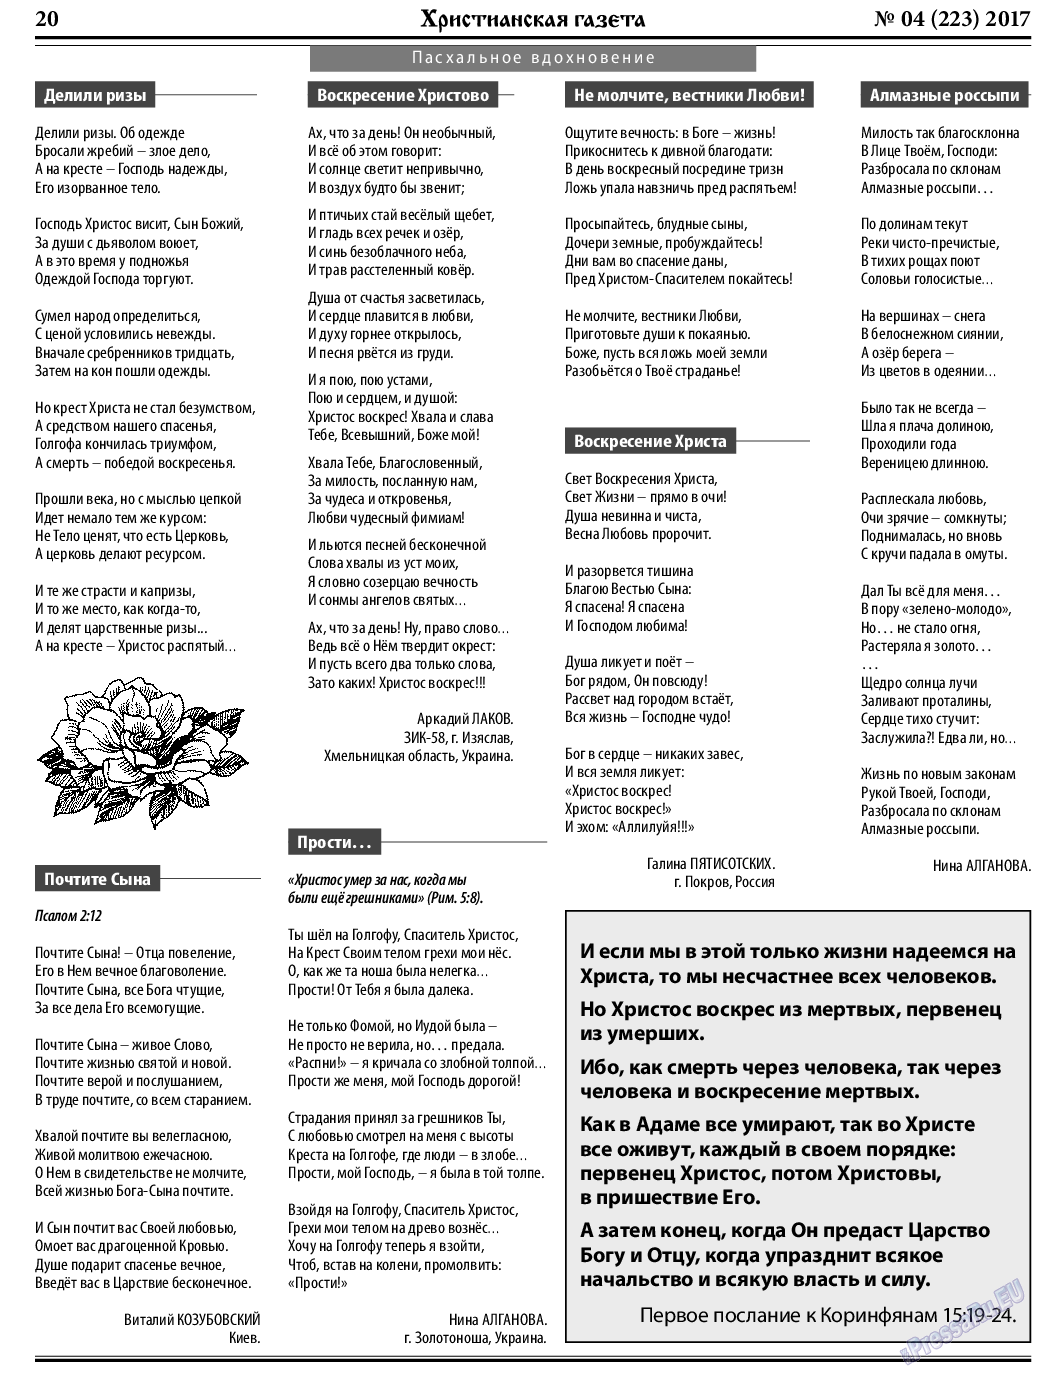 Христианская газета, газета. 2017 №4 стр.20